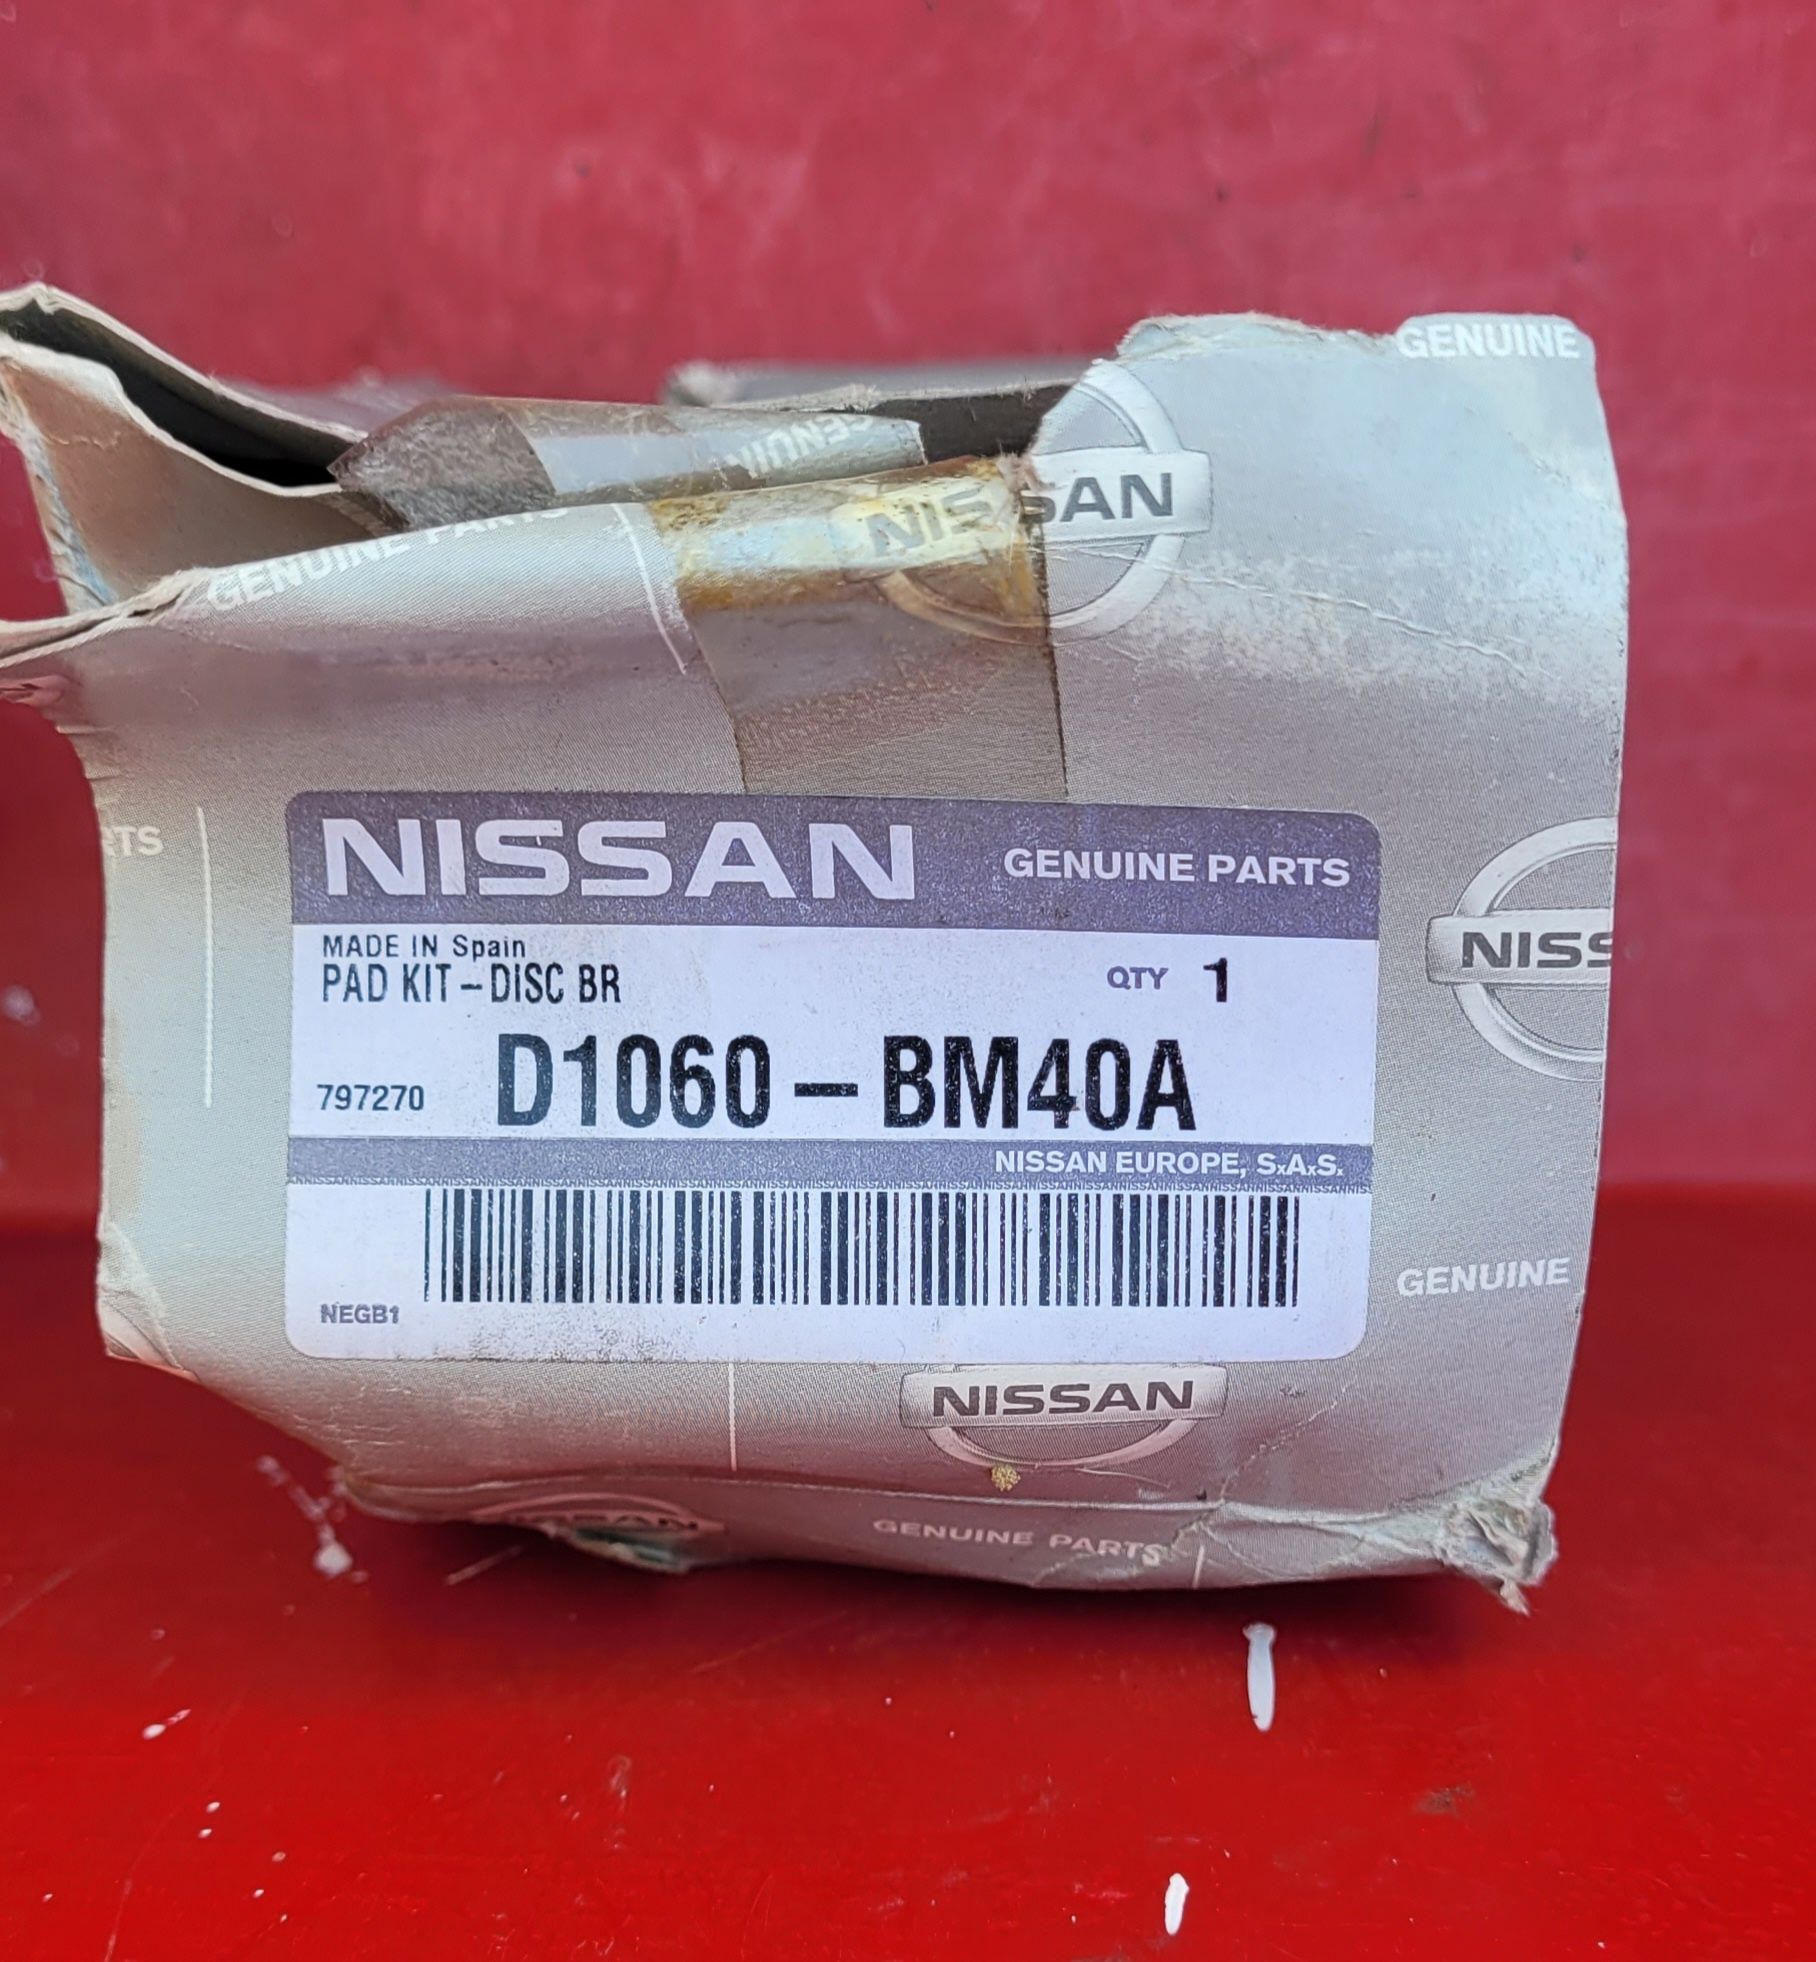 Peças novas originais Nissan (Almera)